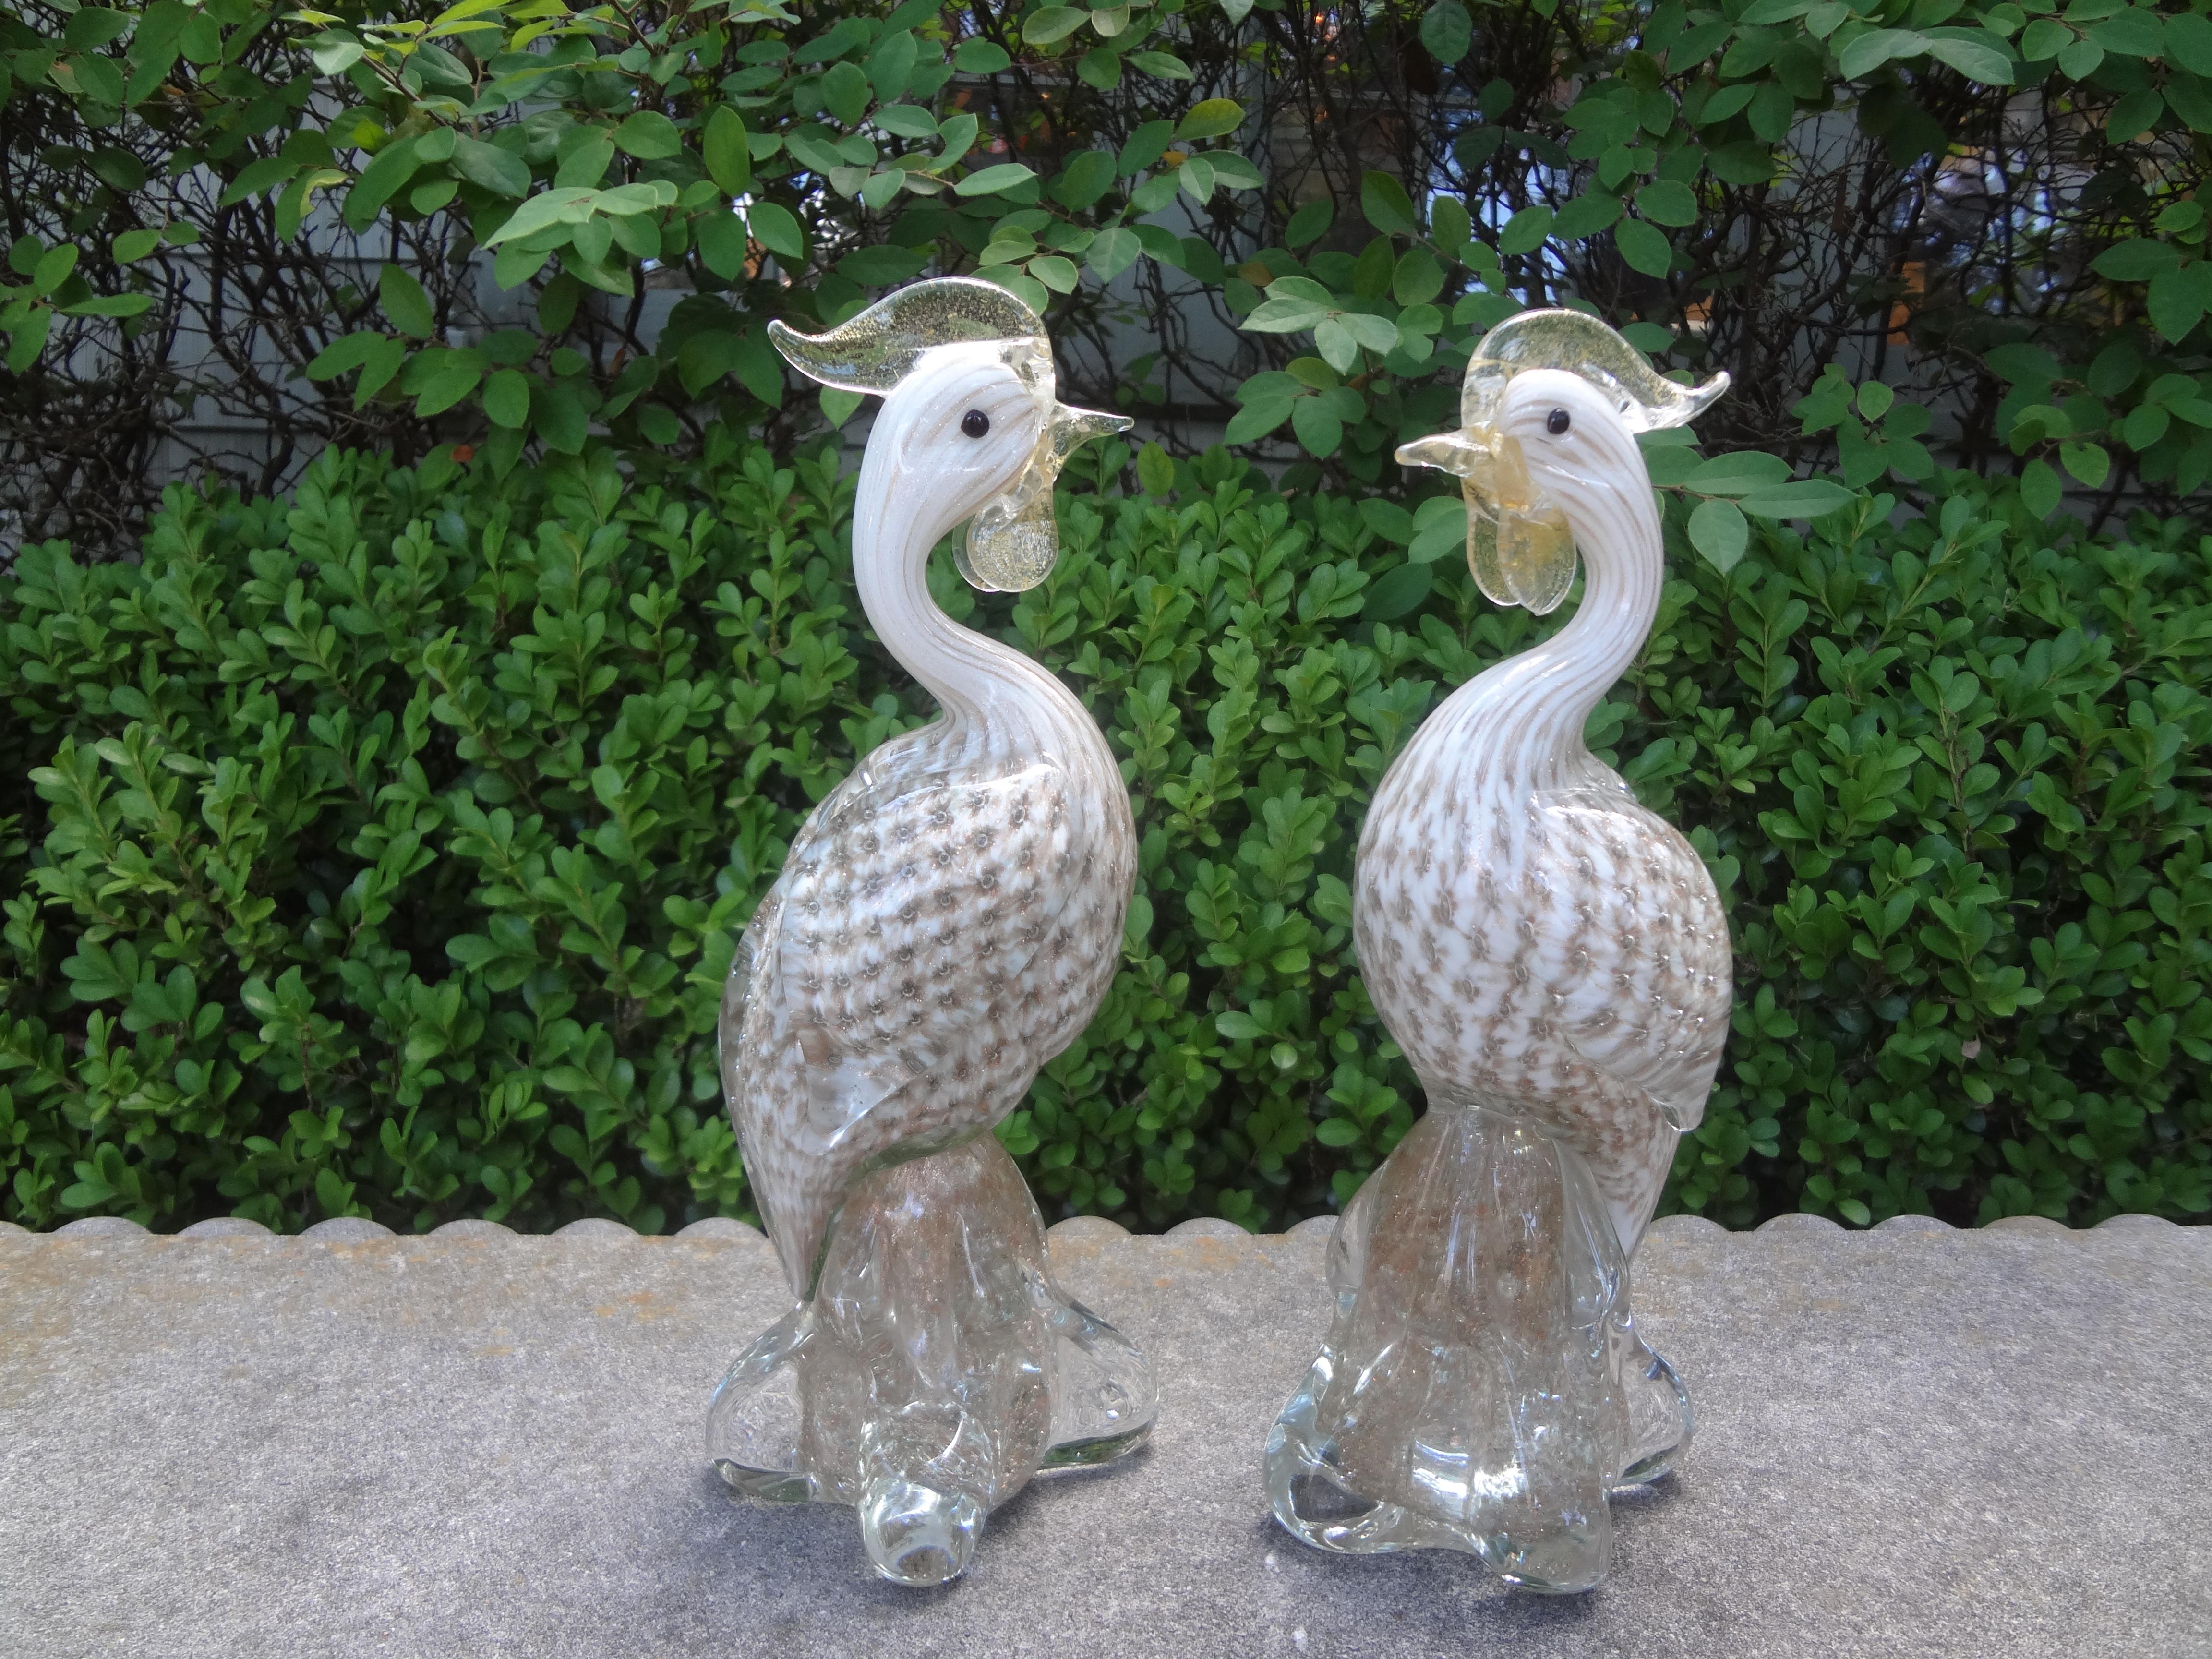 Paar Vögel aus Muranoglas, Archimede Seguso zugeschrieben. Dieses schöne Paar mundgeblasener Glasvögel aus Murano aus den 1970er Jahren wird Archimede Seguso (1909-1999) aus Italien zugeschrieben.
Archimede Seguso wurde auf der Insel Murano